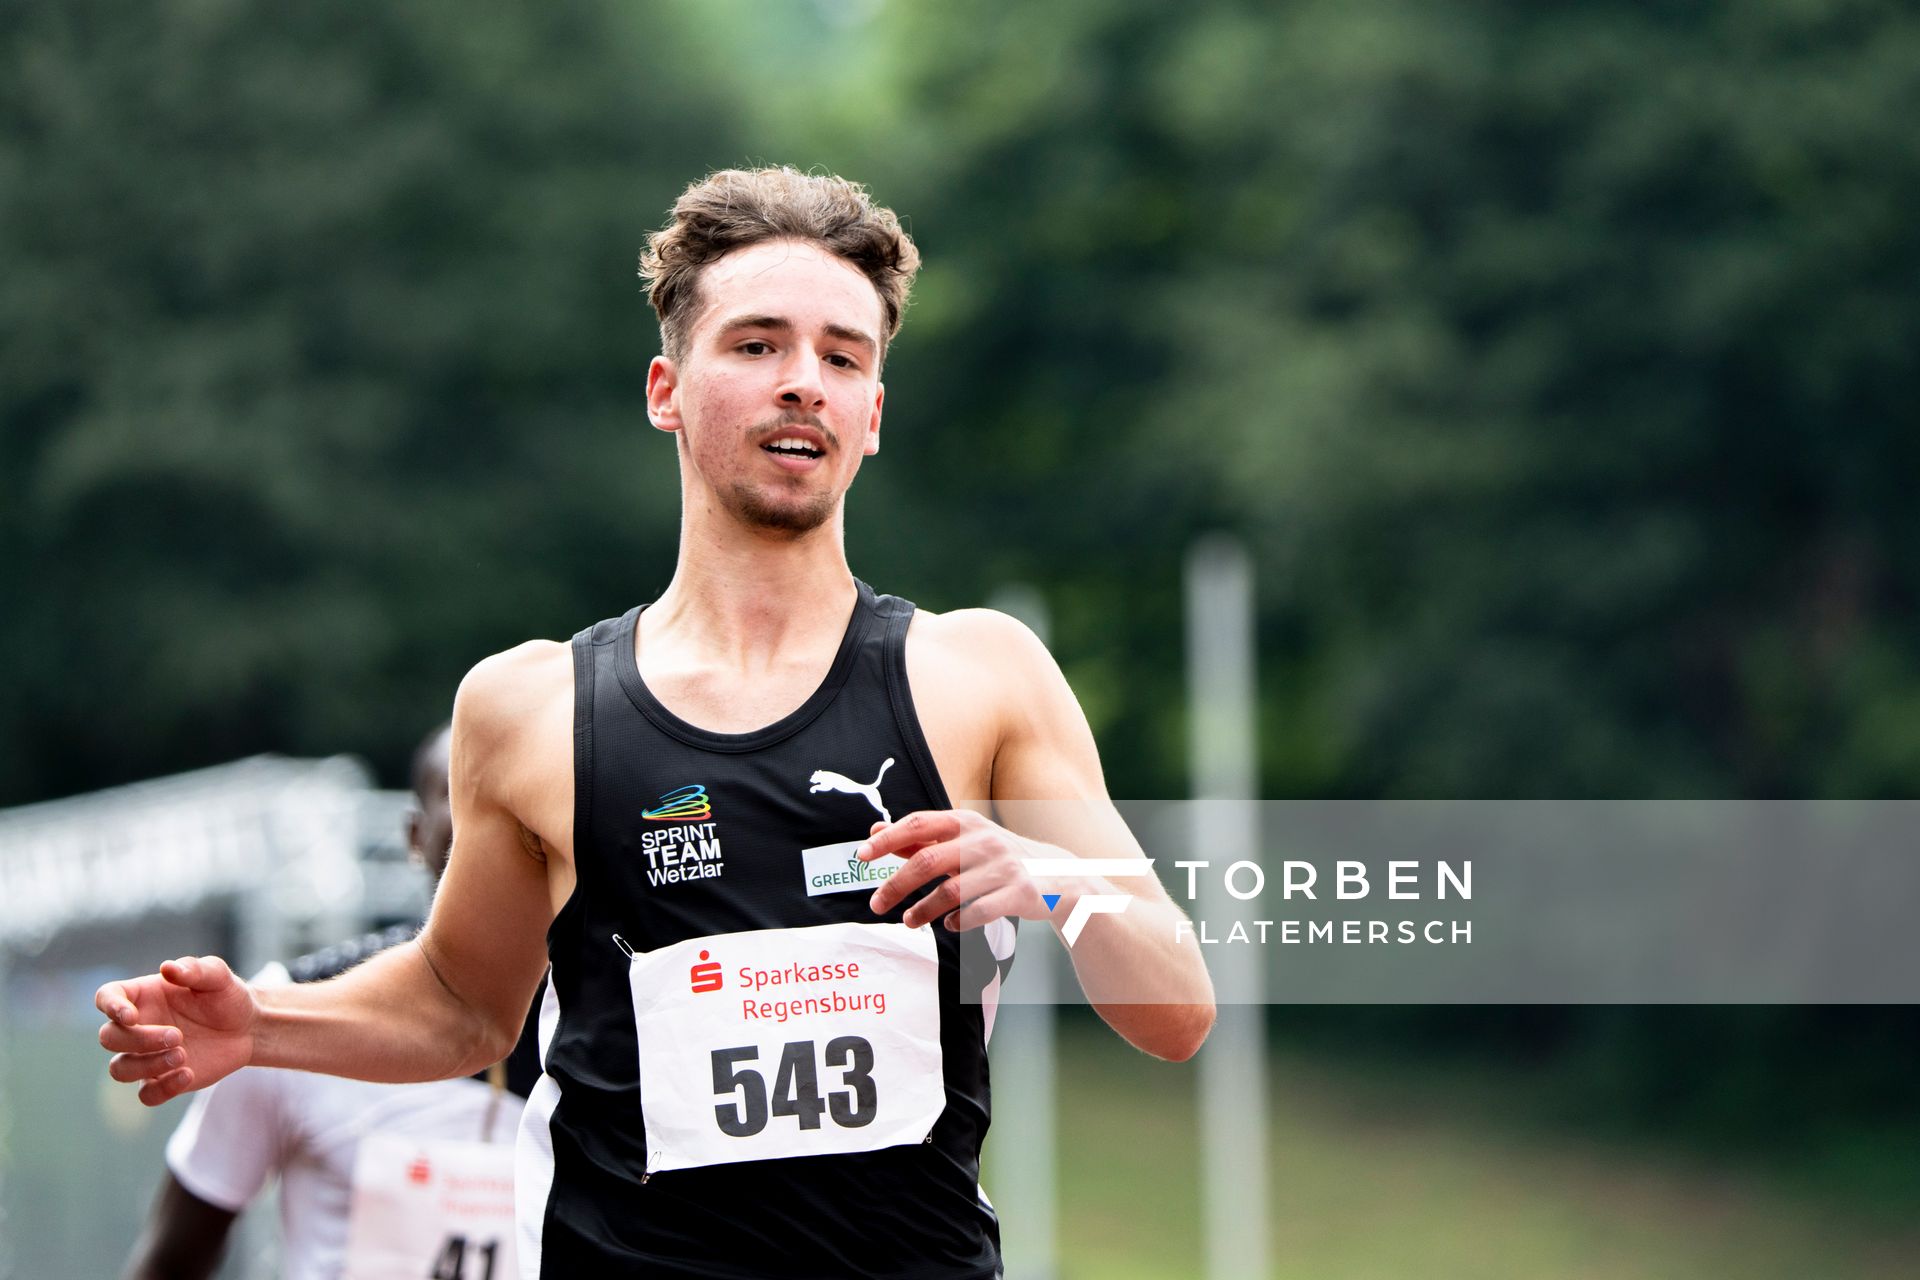 Aaron Giurgian (Sprintteam Wetzlar) ueber 110m Huerden am 04.06.2022 waehrend der Sparkassen Gala in Regensburg